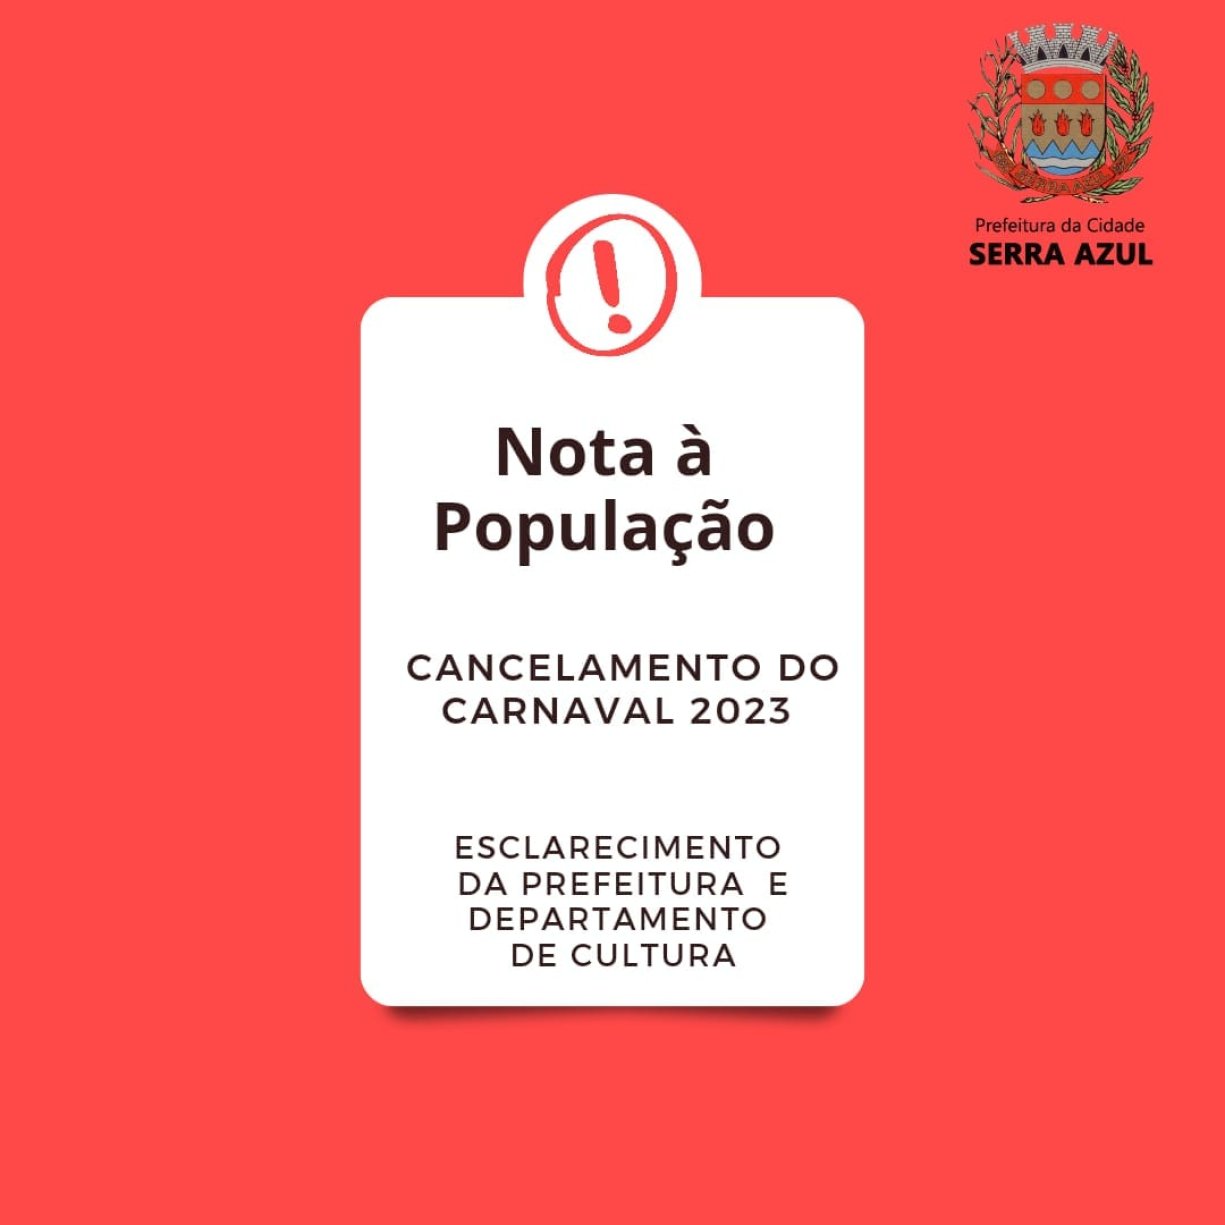 Dados inconclusivos do Censo 2022 faz Prefeitura cancelar o carnaval 2023